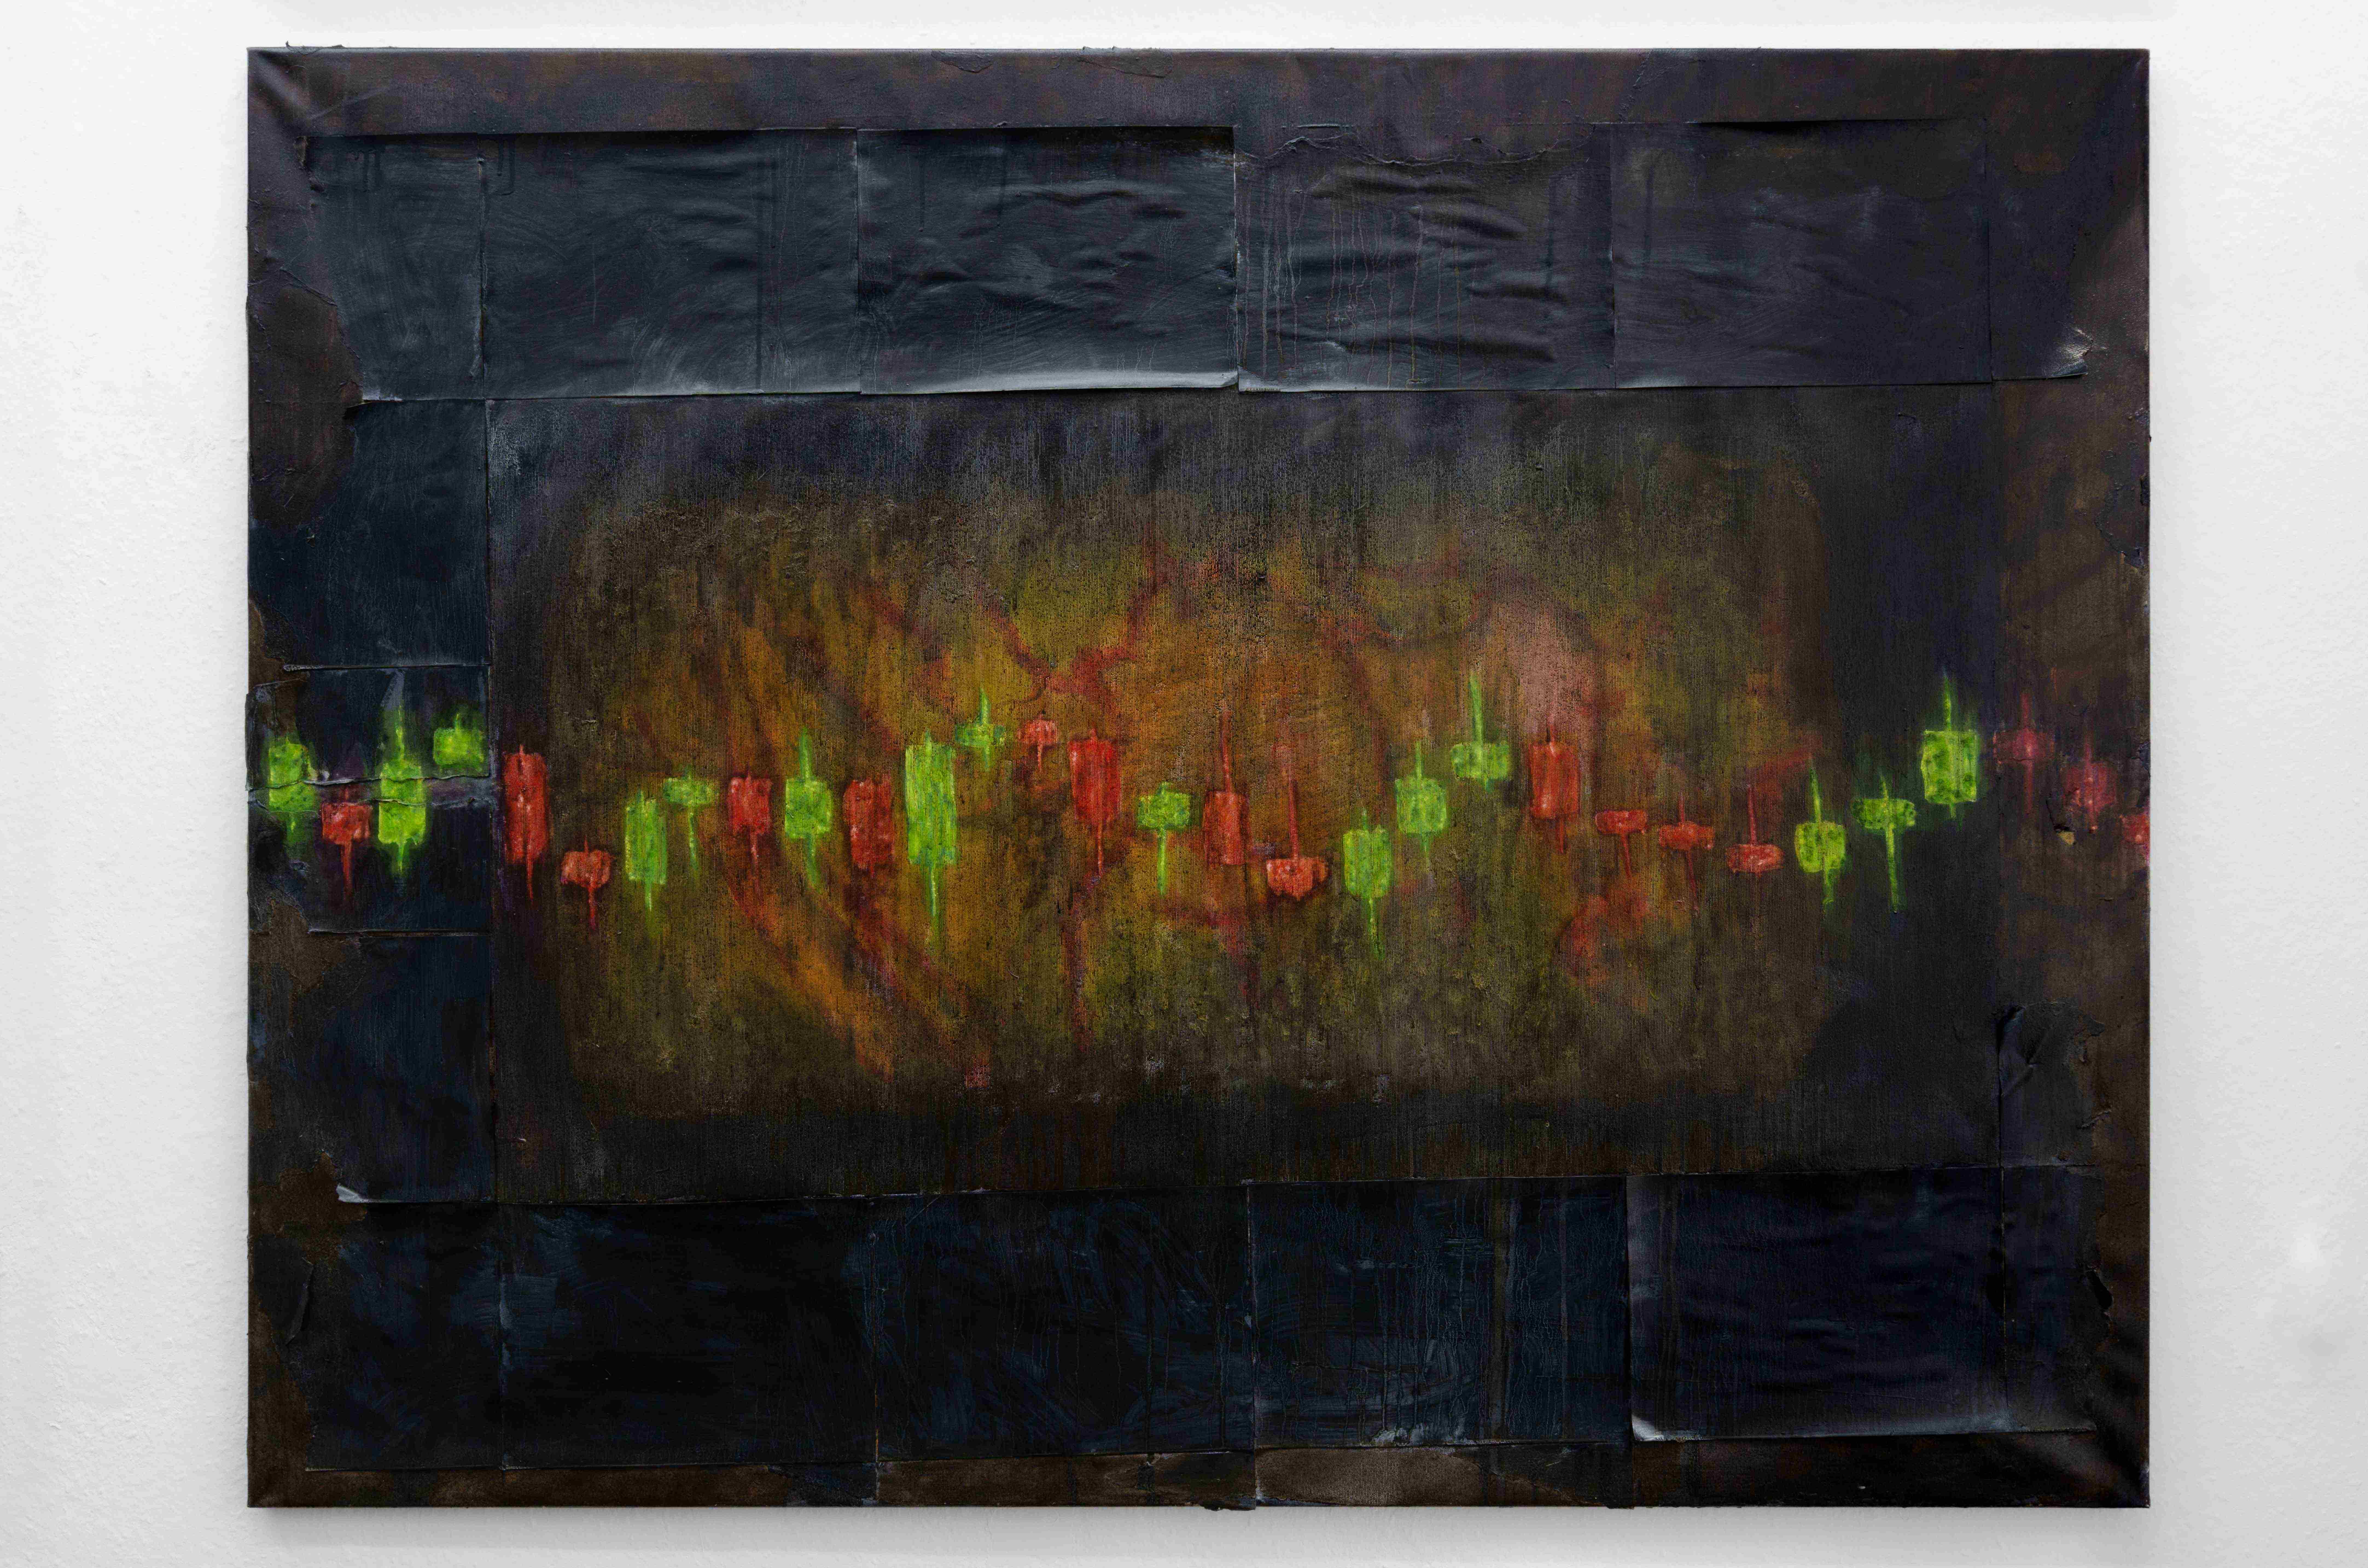 Andy Schumacher, mental activity, 2022, Oil, paper on canvas, 150cm x 115cm